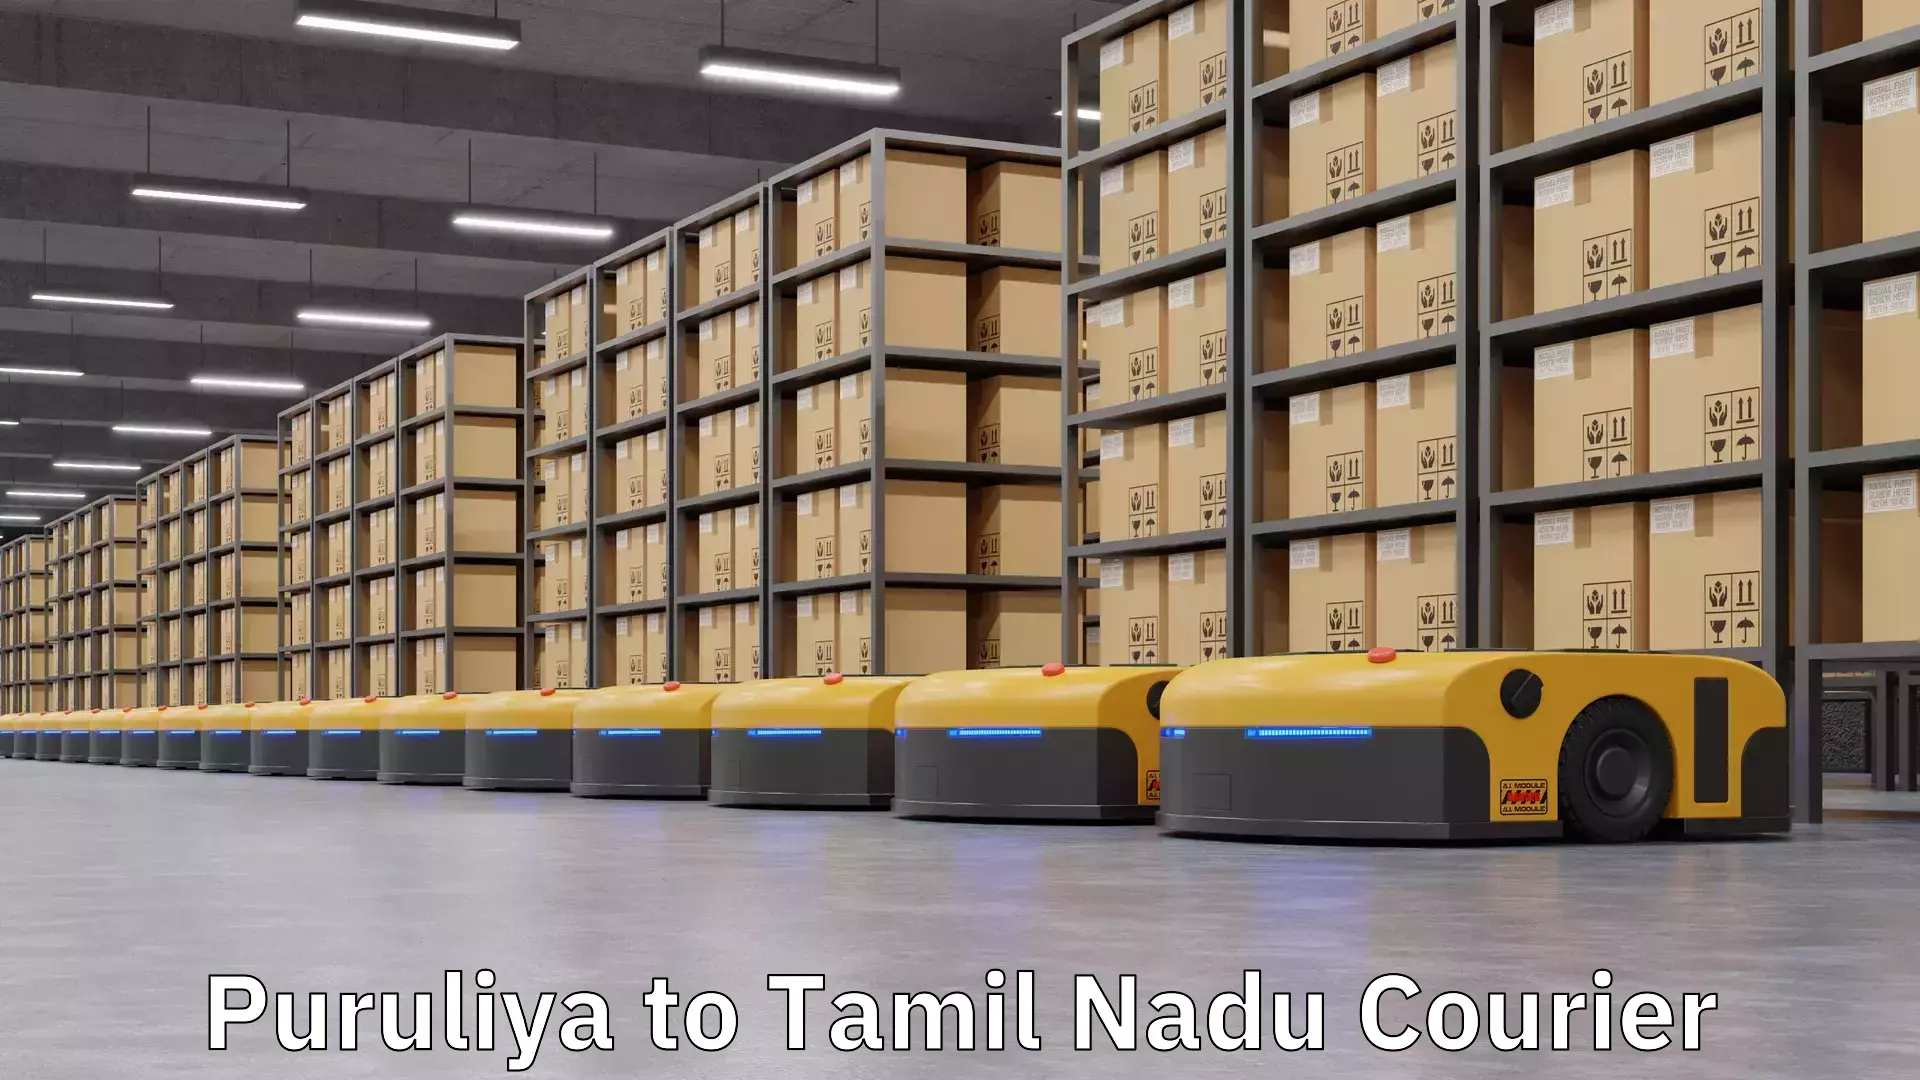 Door-to-door shipment Puruliya to Tamil Nadu